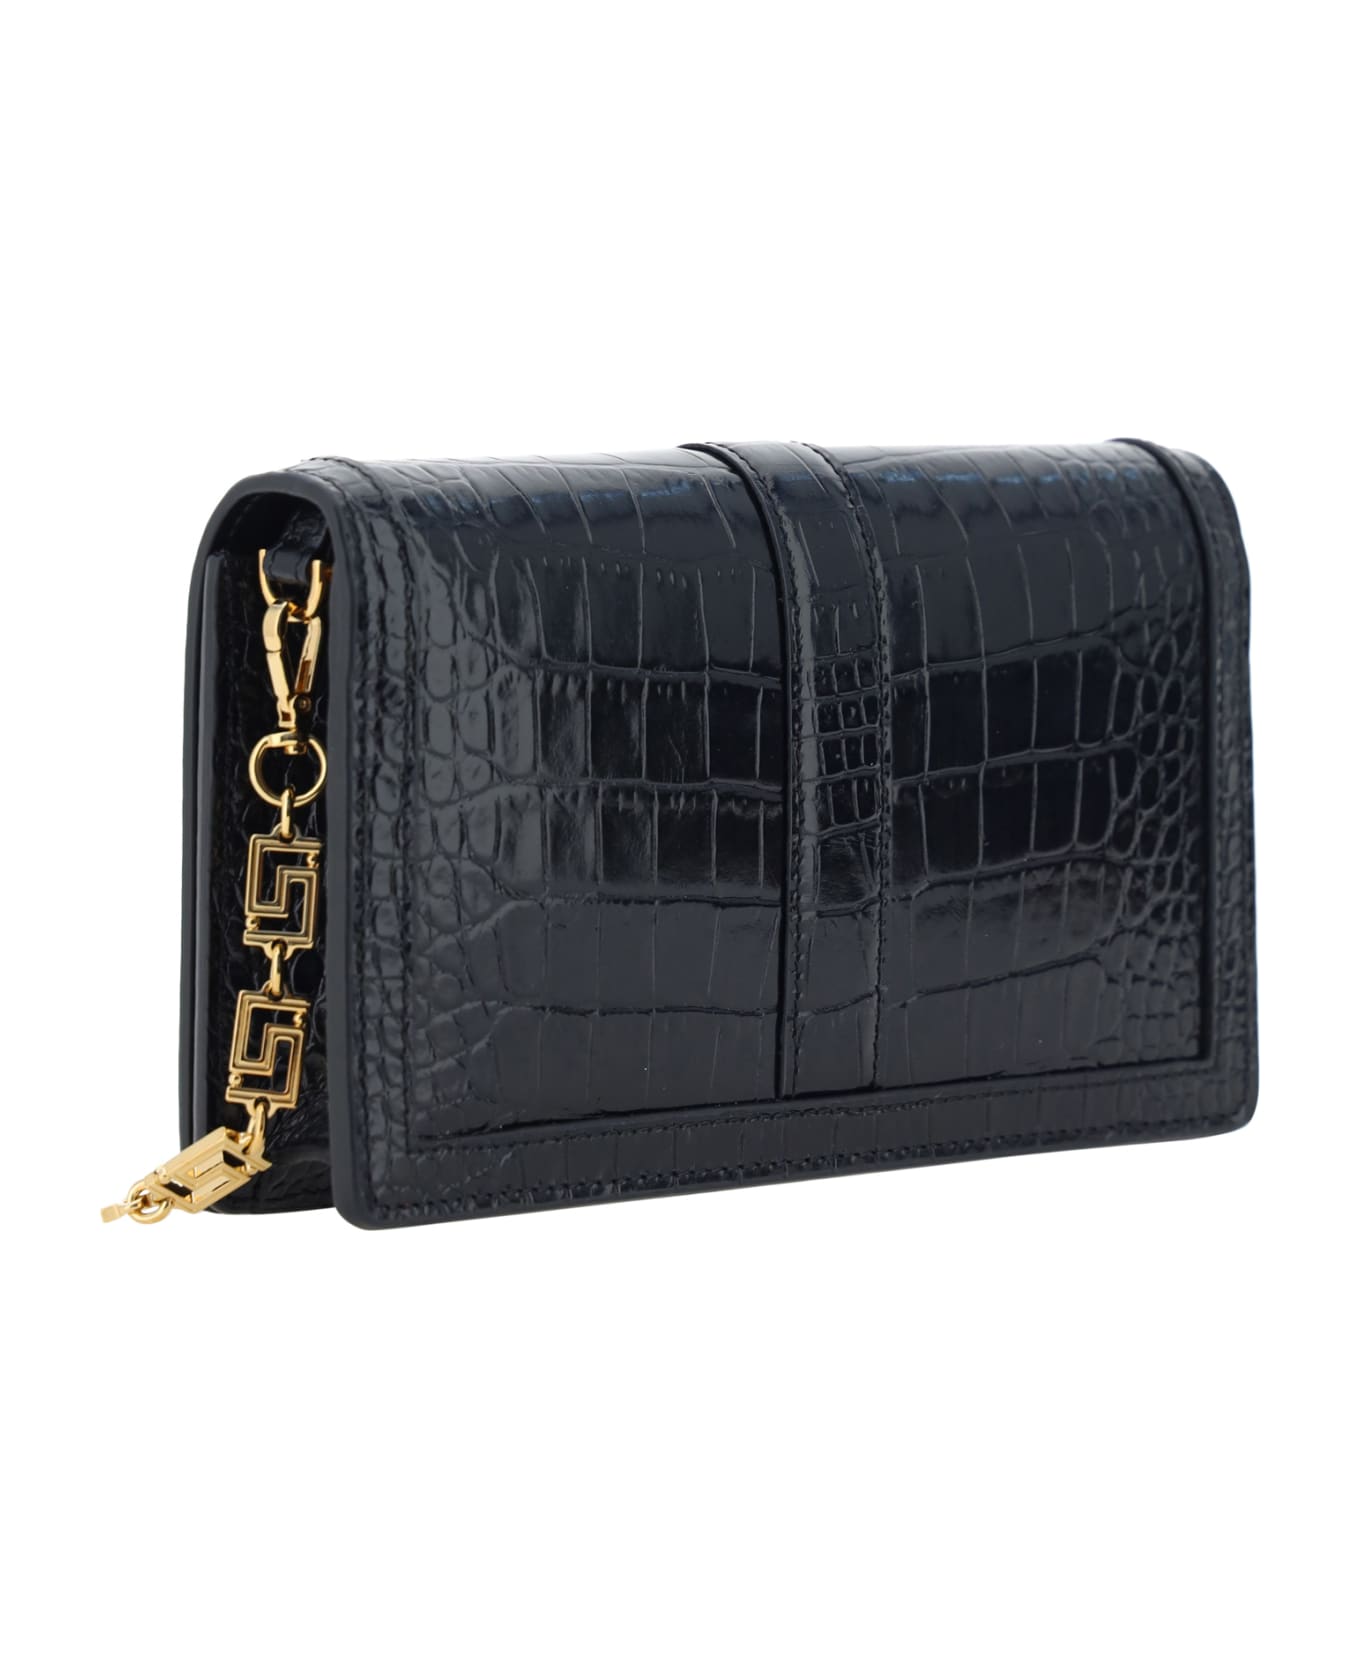 Versace Mini Greca Goddess Bag - Nero/oro Versace